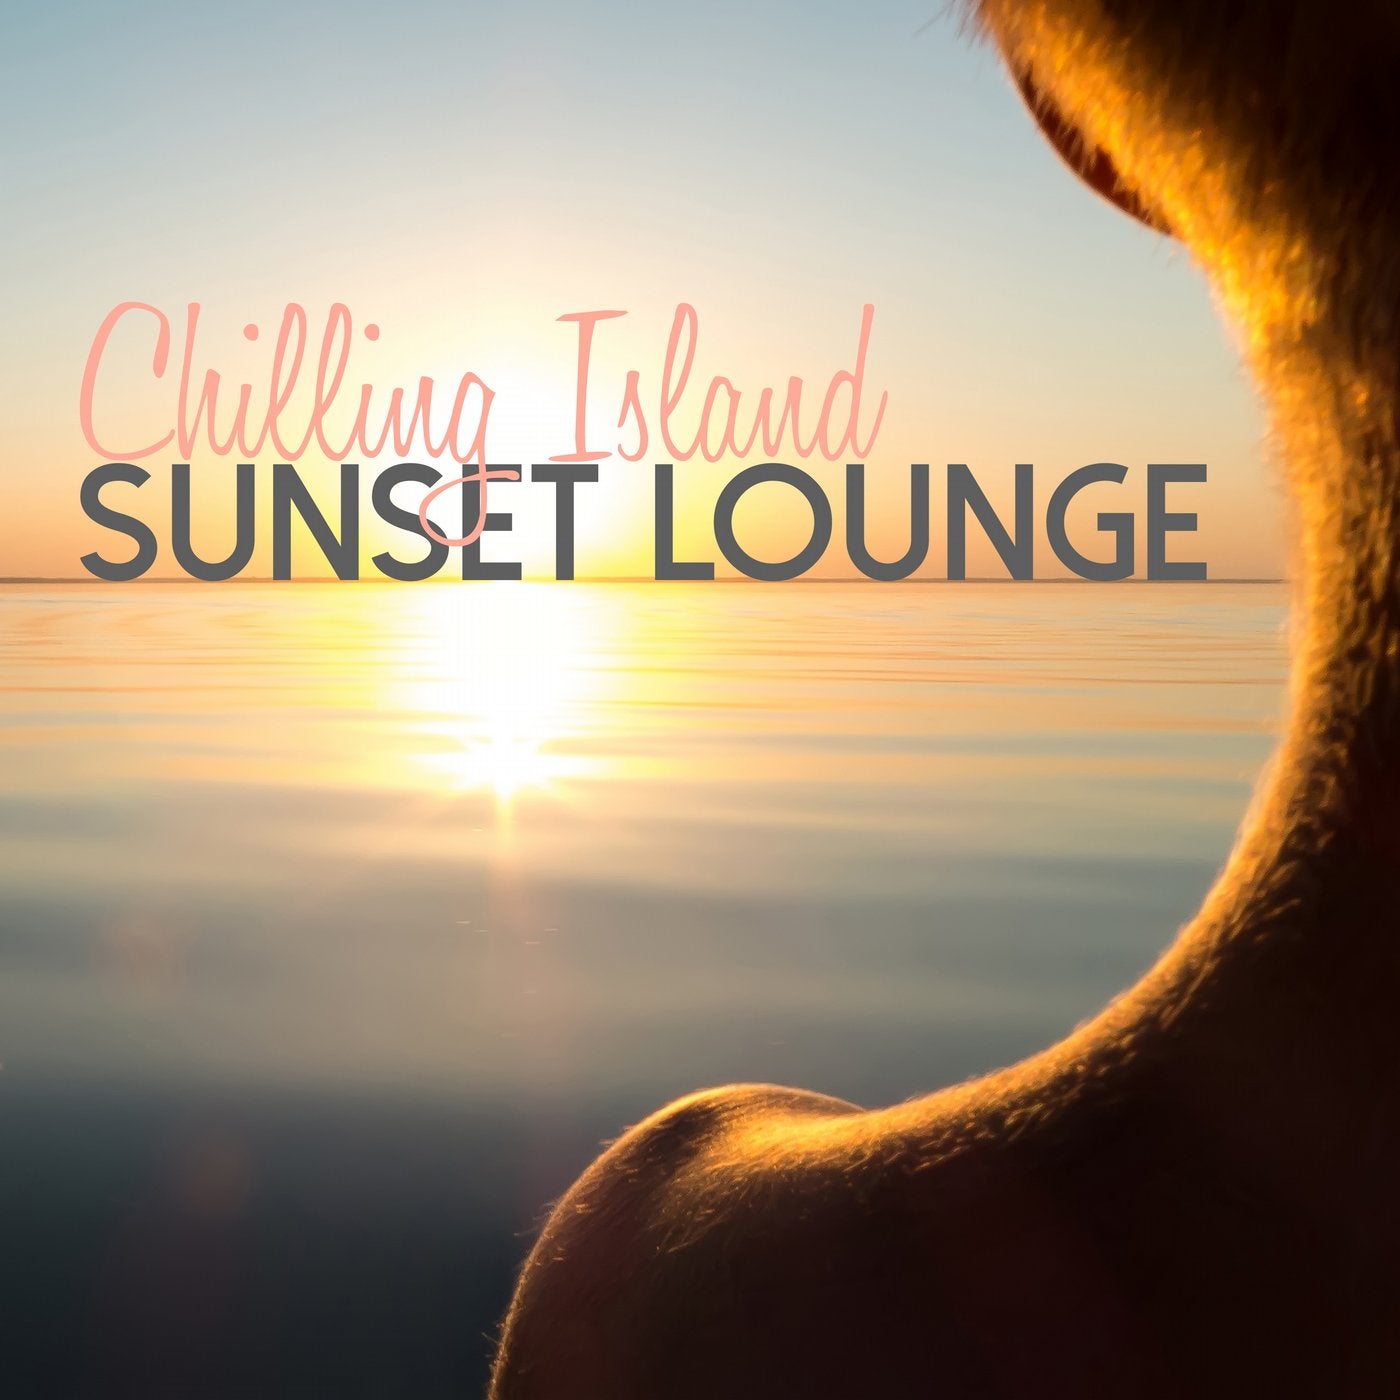 Chilling Island Sunset Lounge